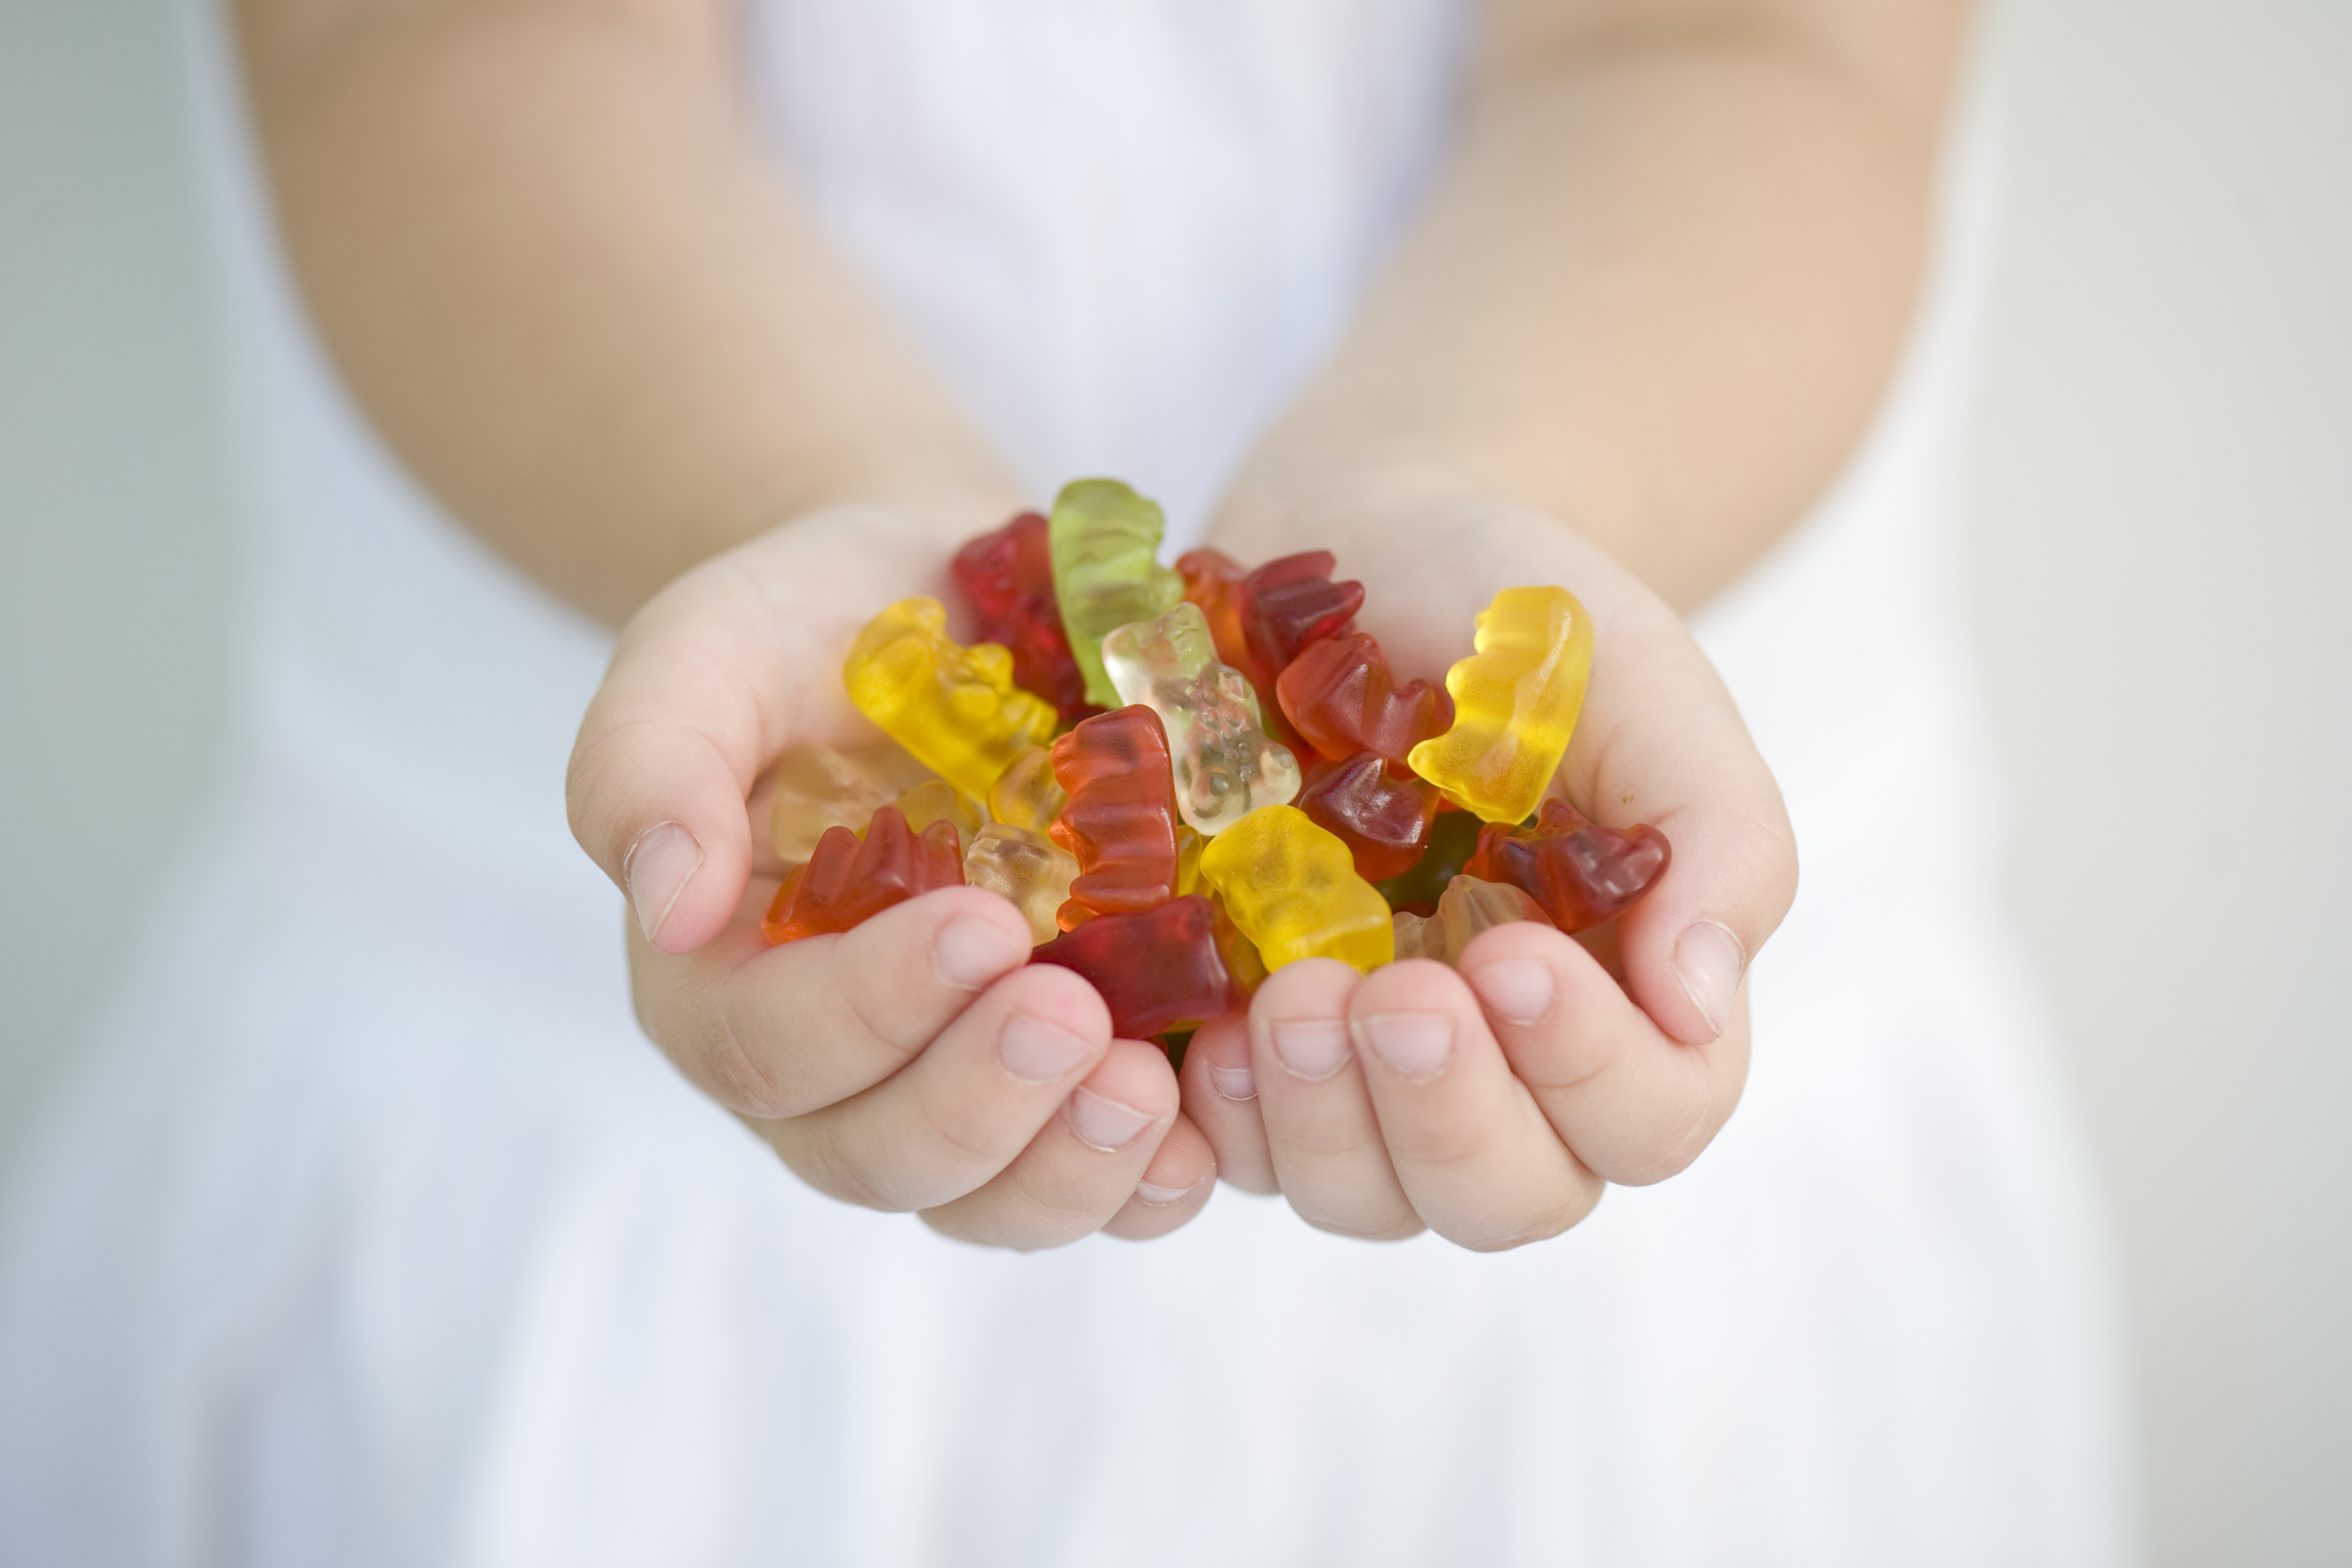 Is it OK to eat gummy bears?